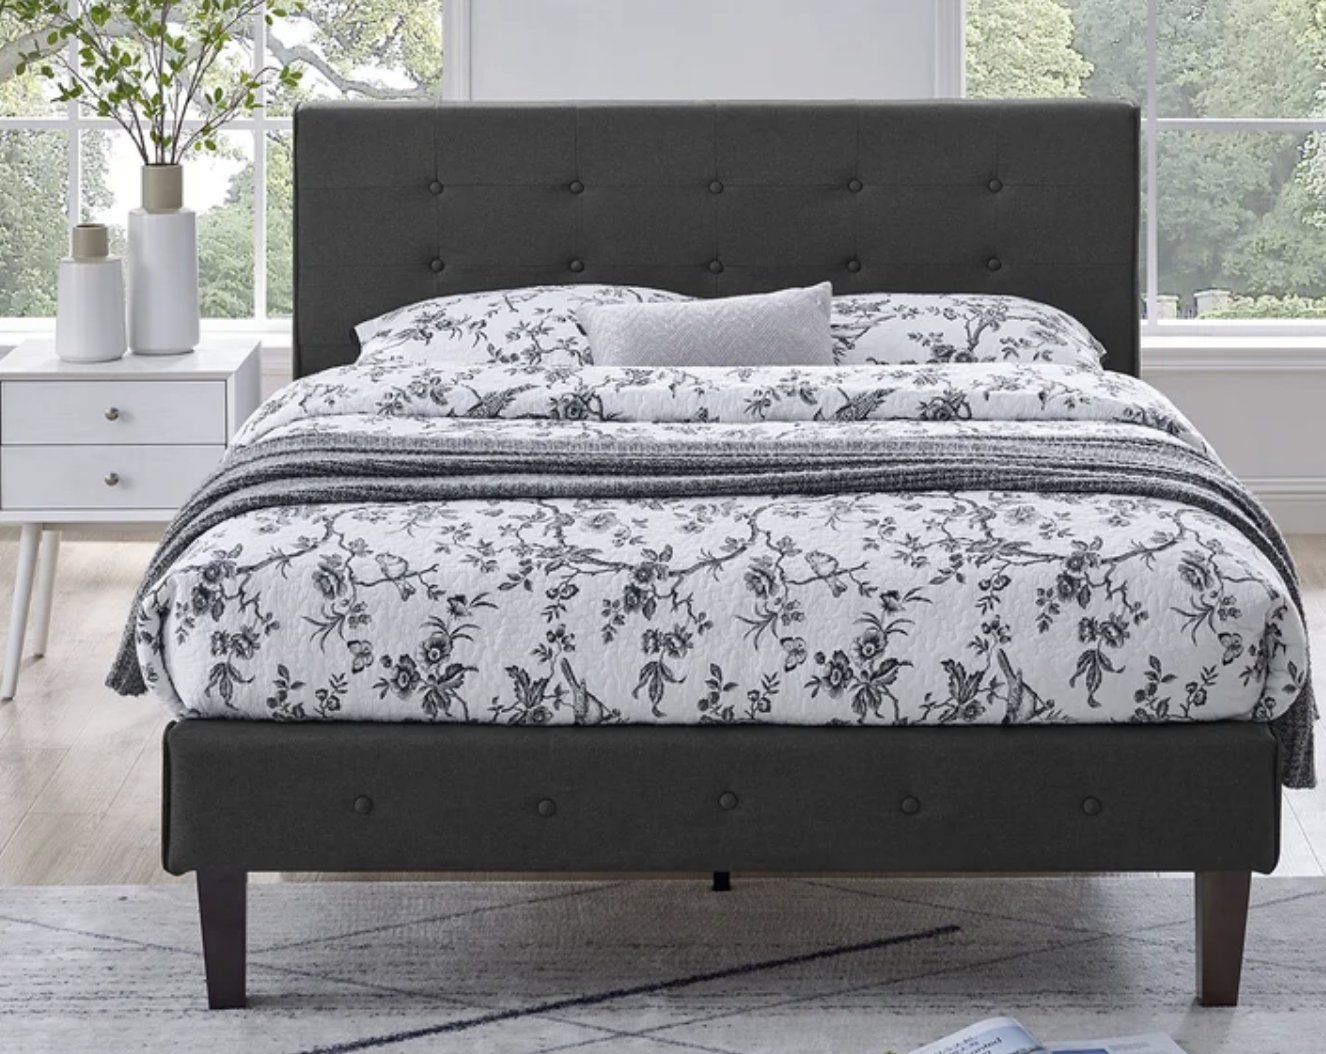 Chrissette Tufted Upholstered Low Profile Platform Bed - Image 0